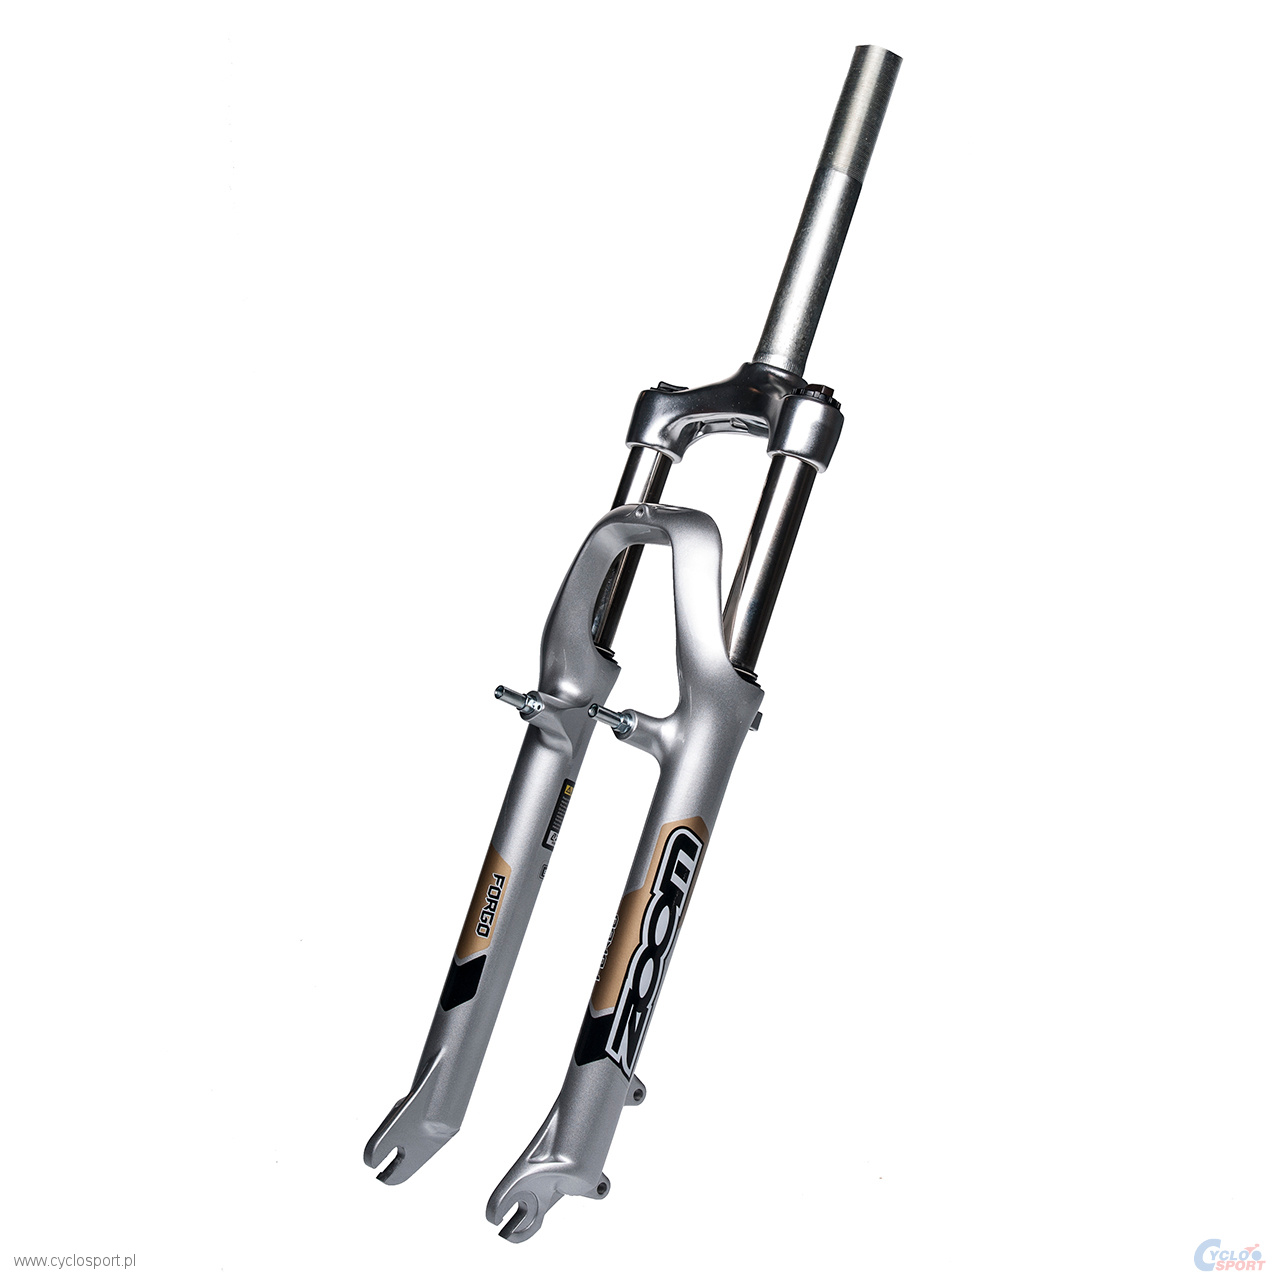 zoom 565 suspension fork